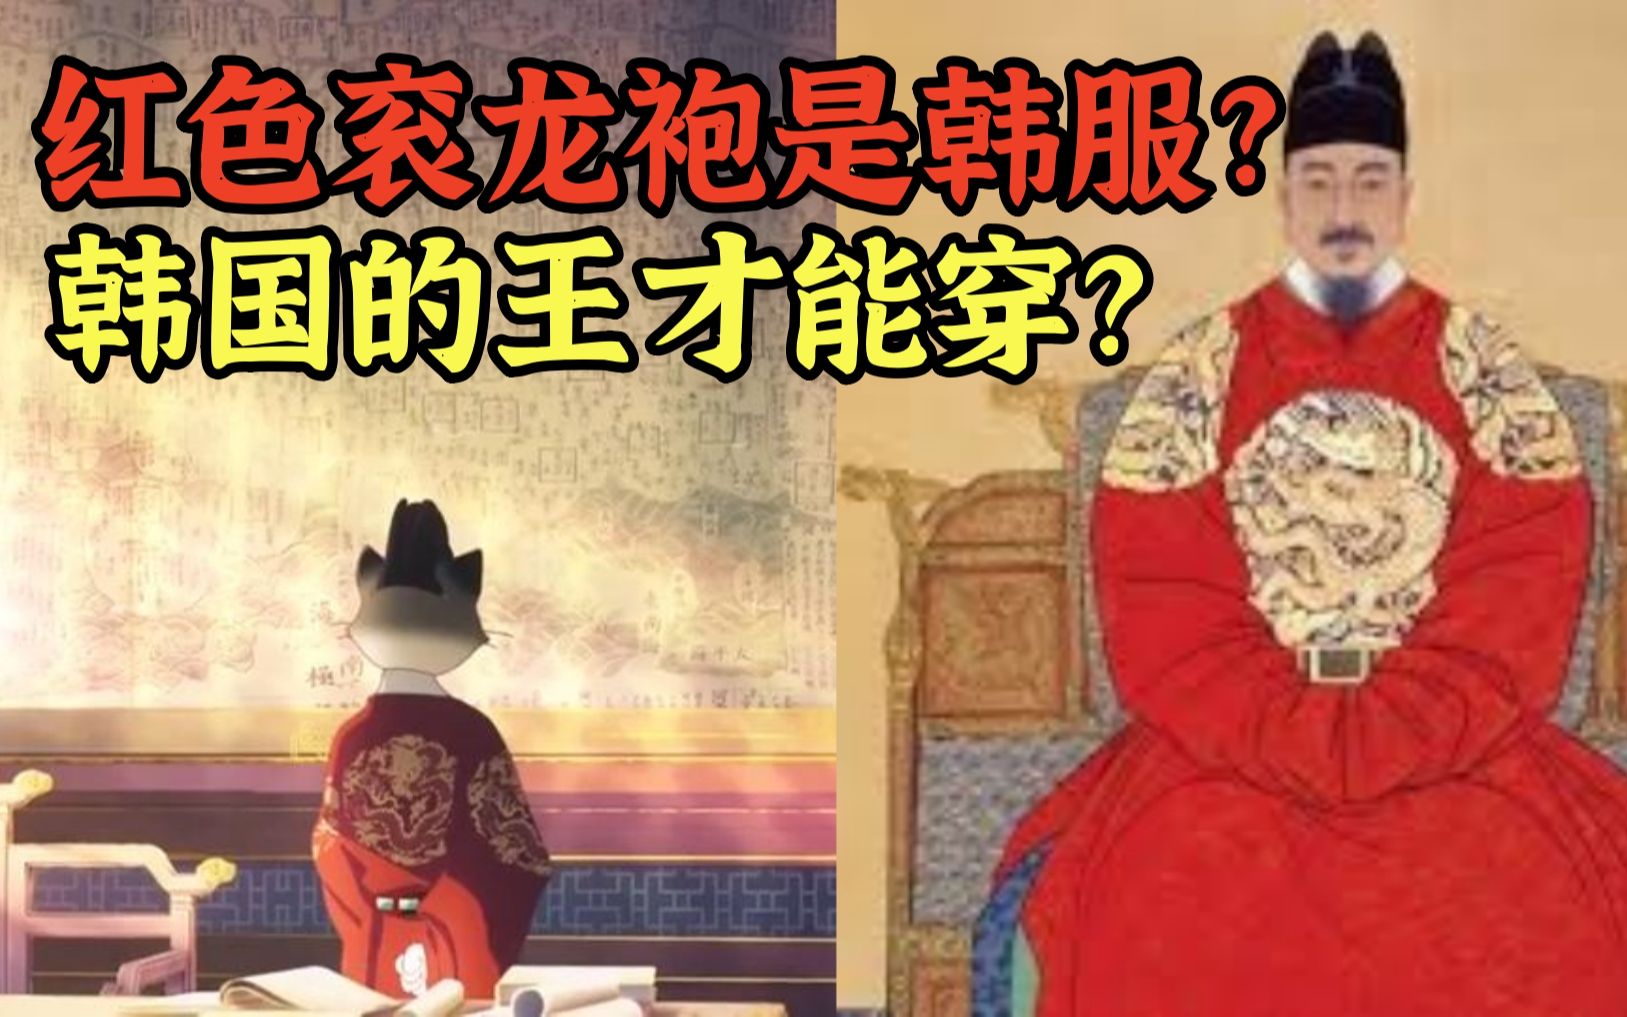 中国动画《紫禁御喵房》PV让韩国人破防,“衮龙袍明明是我们王的服装”